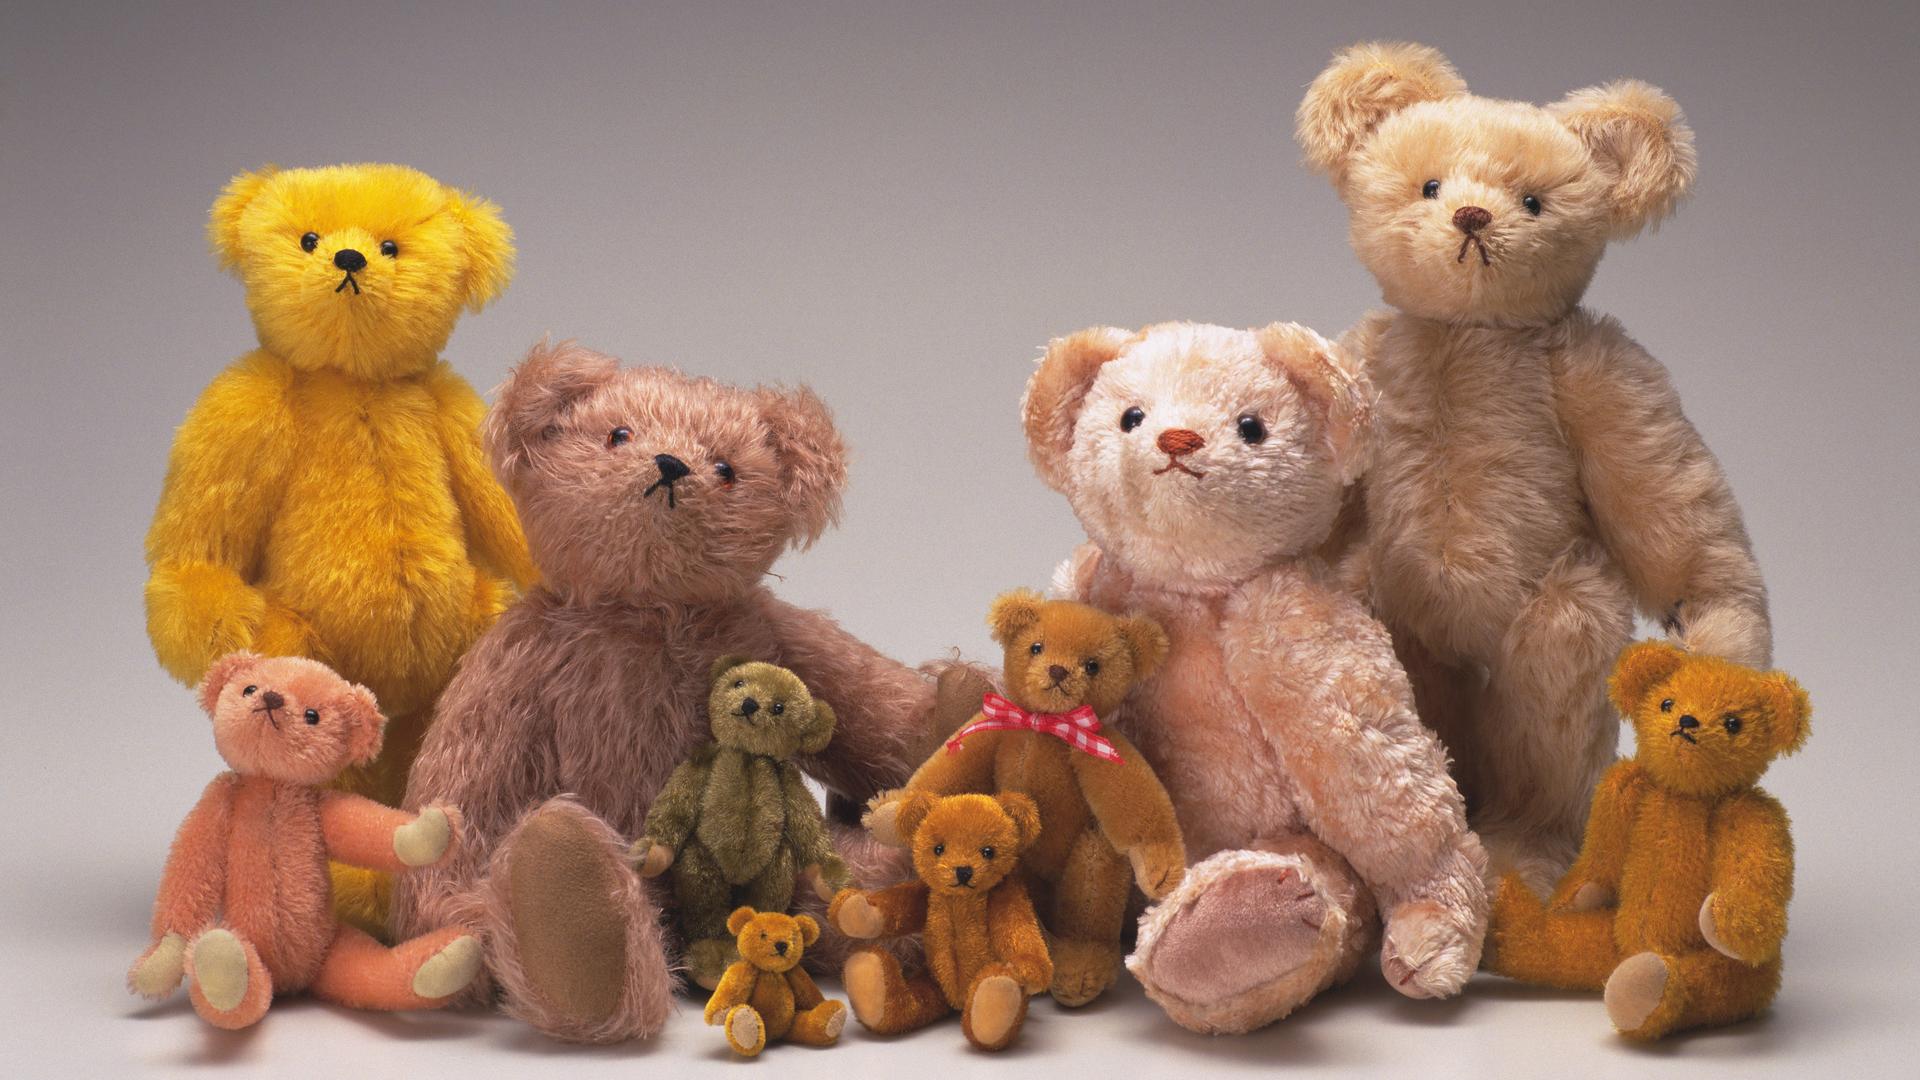 Viele Teddybären in verschiedenen Größen und Farben posieren nebeneinander wie auf einem Familienporträt.